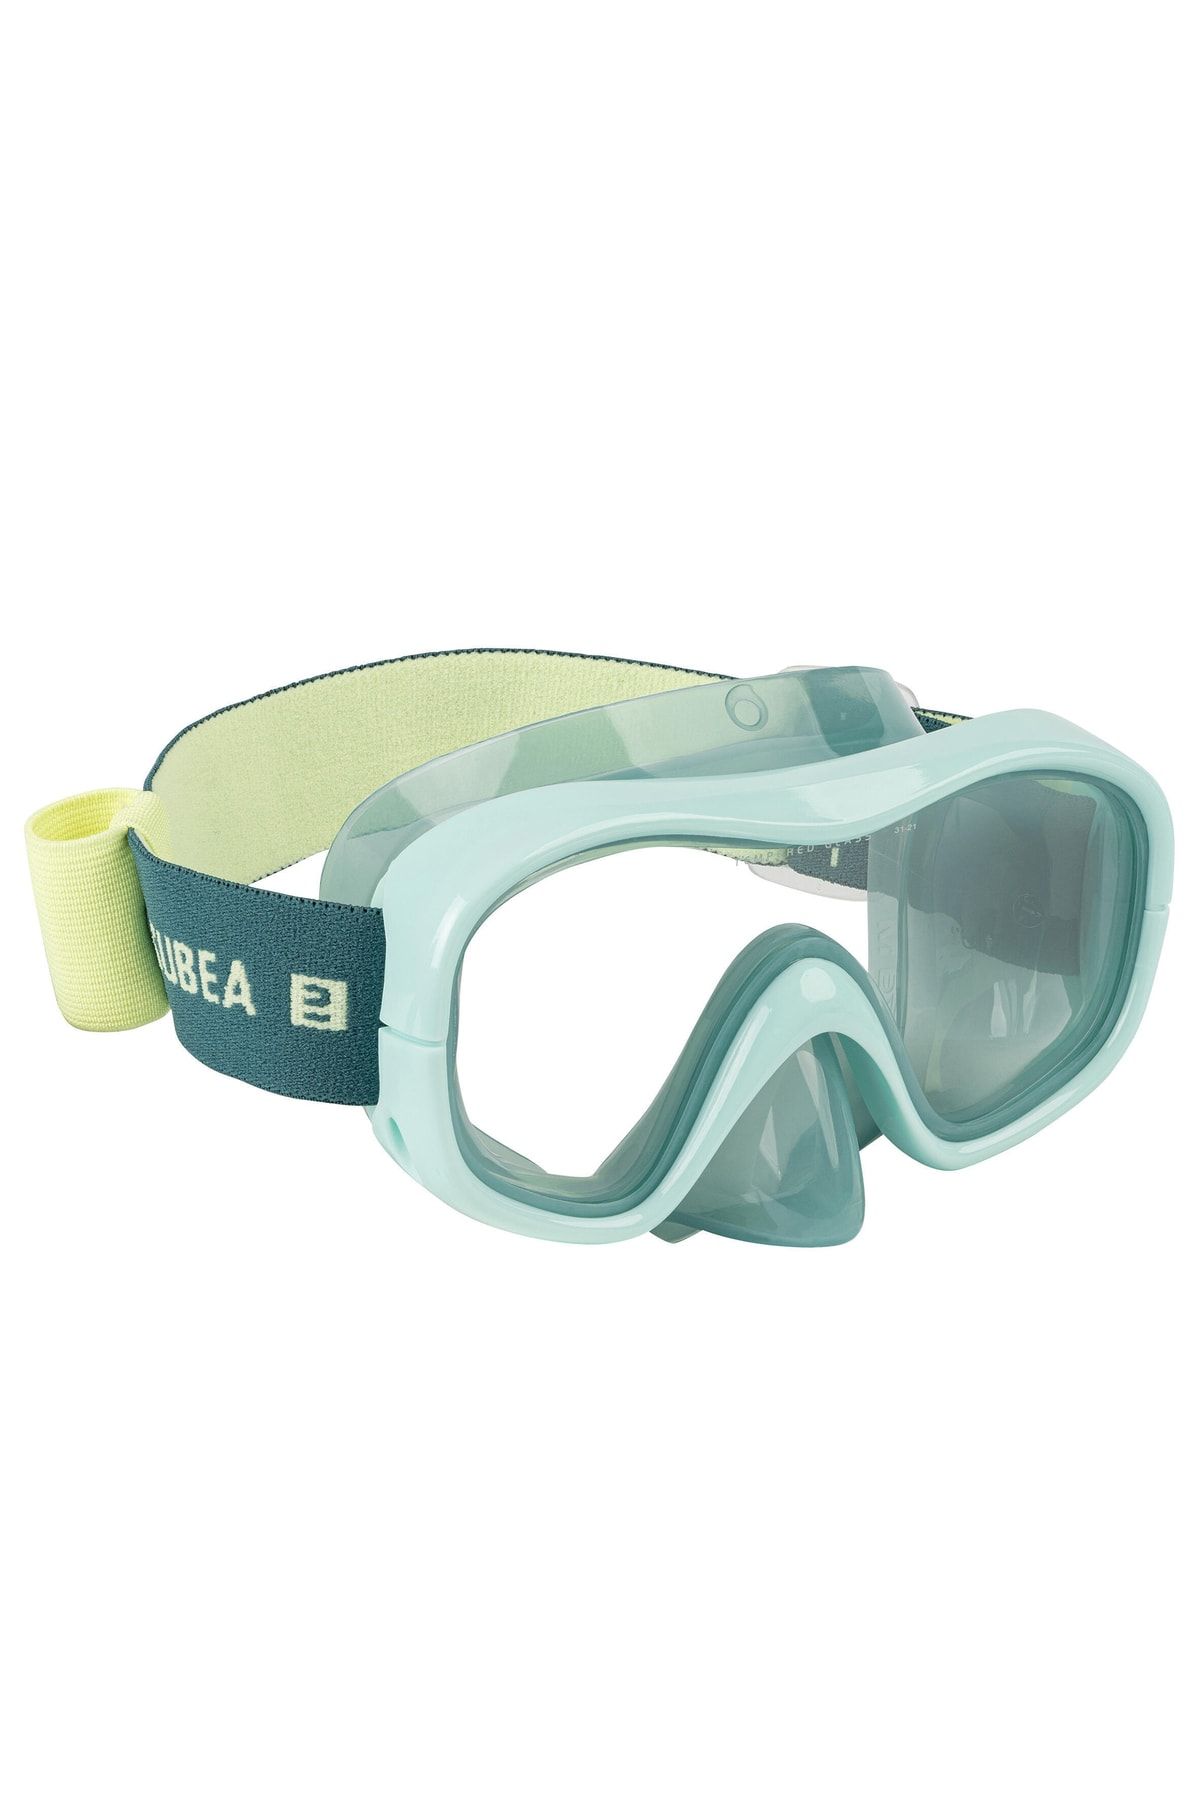 Decathlon - Deniz Gözlüğü Dalış Maskesi Havuz Maskesi Havuz Gözlüğü Yetişkin